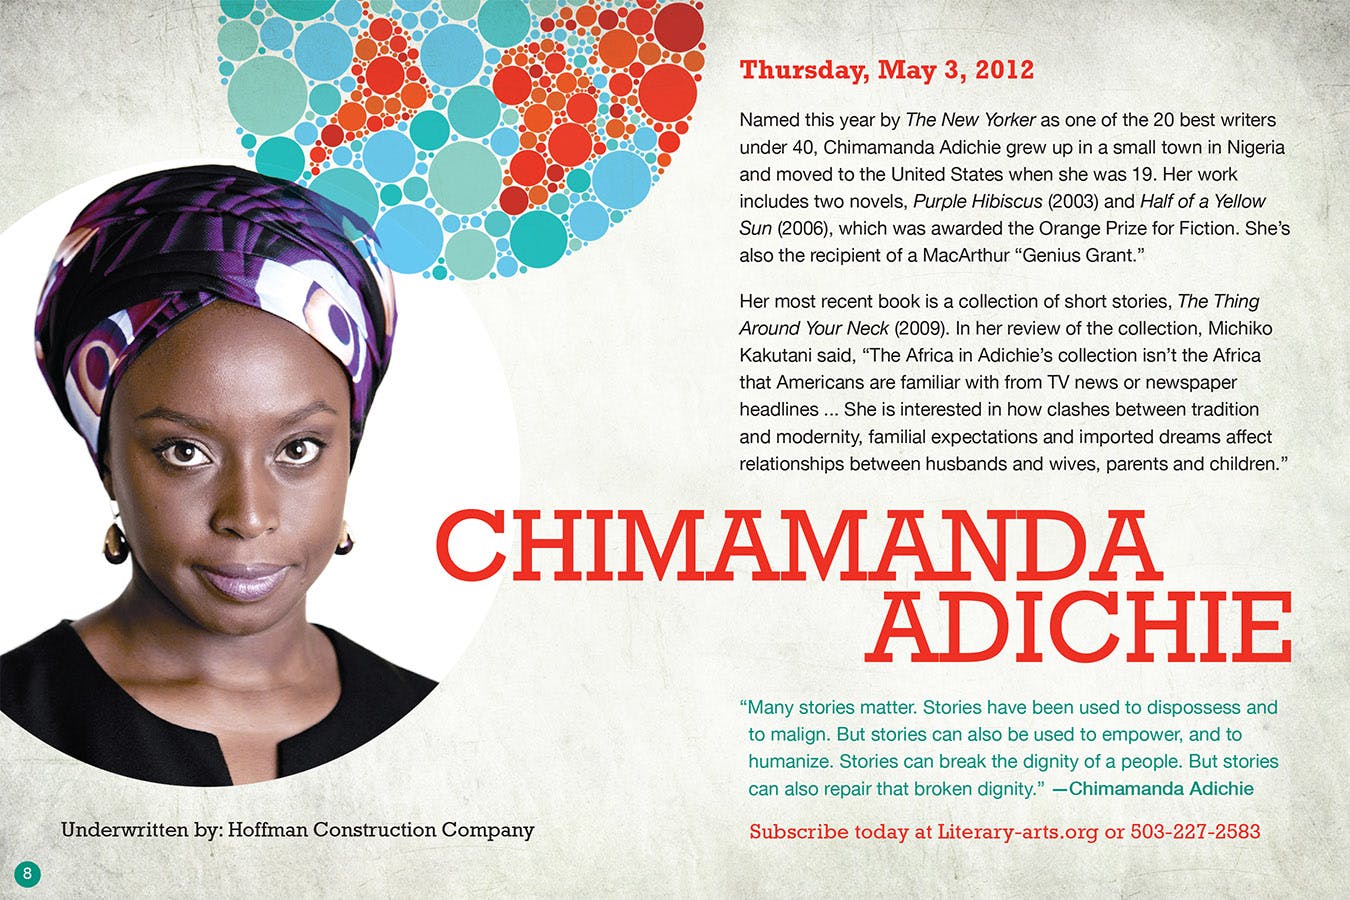 Image from Literary Arts; Chimamanda Adichie